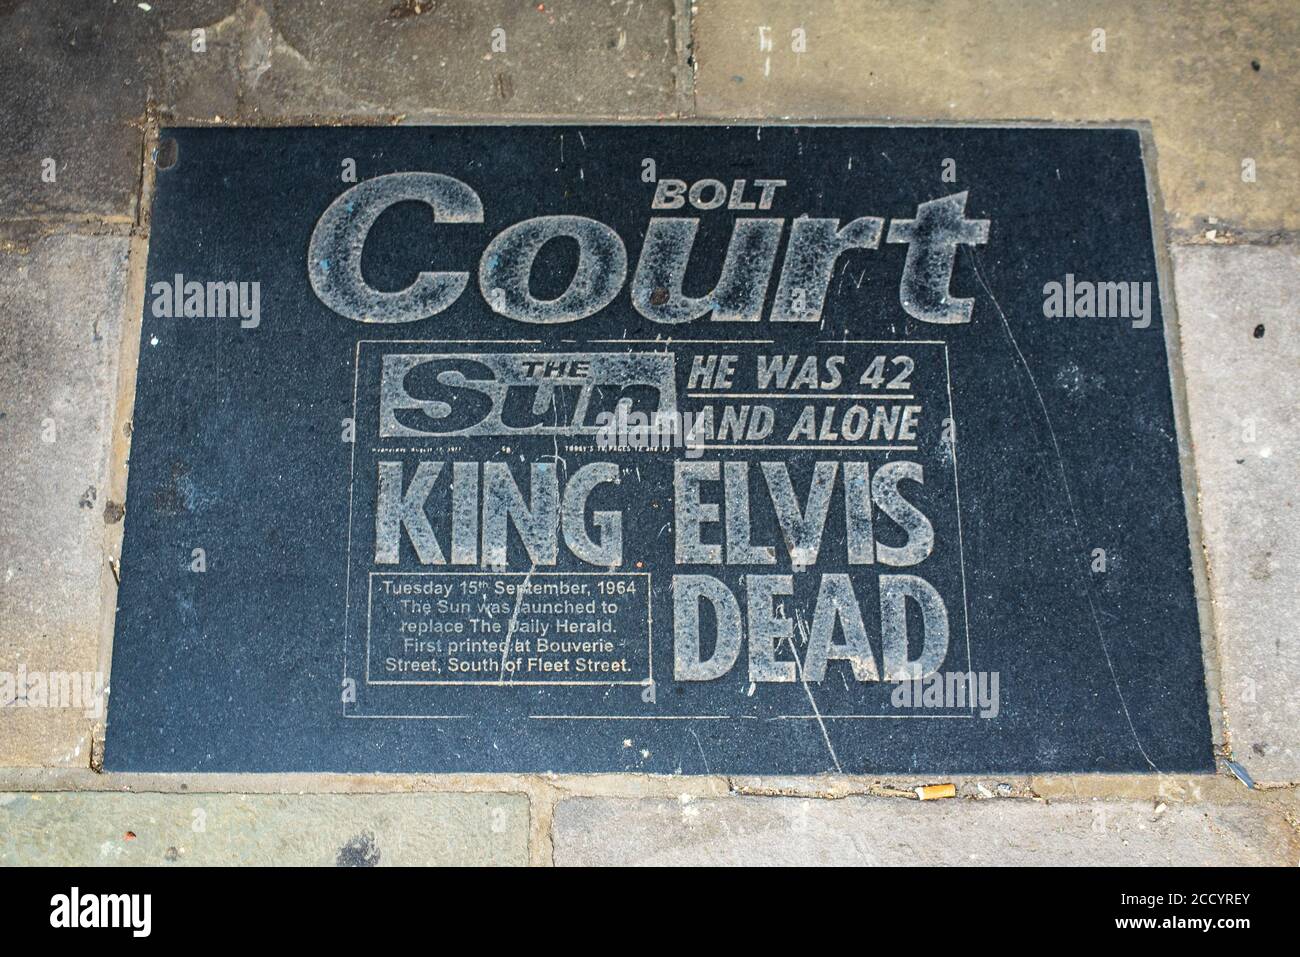 Placa de pavimento Bolt Court - Sun Elvis Dead Headline - Placa conmemorativa de la herencia periodística de la zona alrededor de Fleet Calle en el centro de Londres Foto de stock